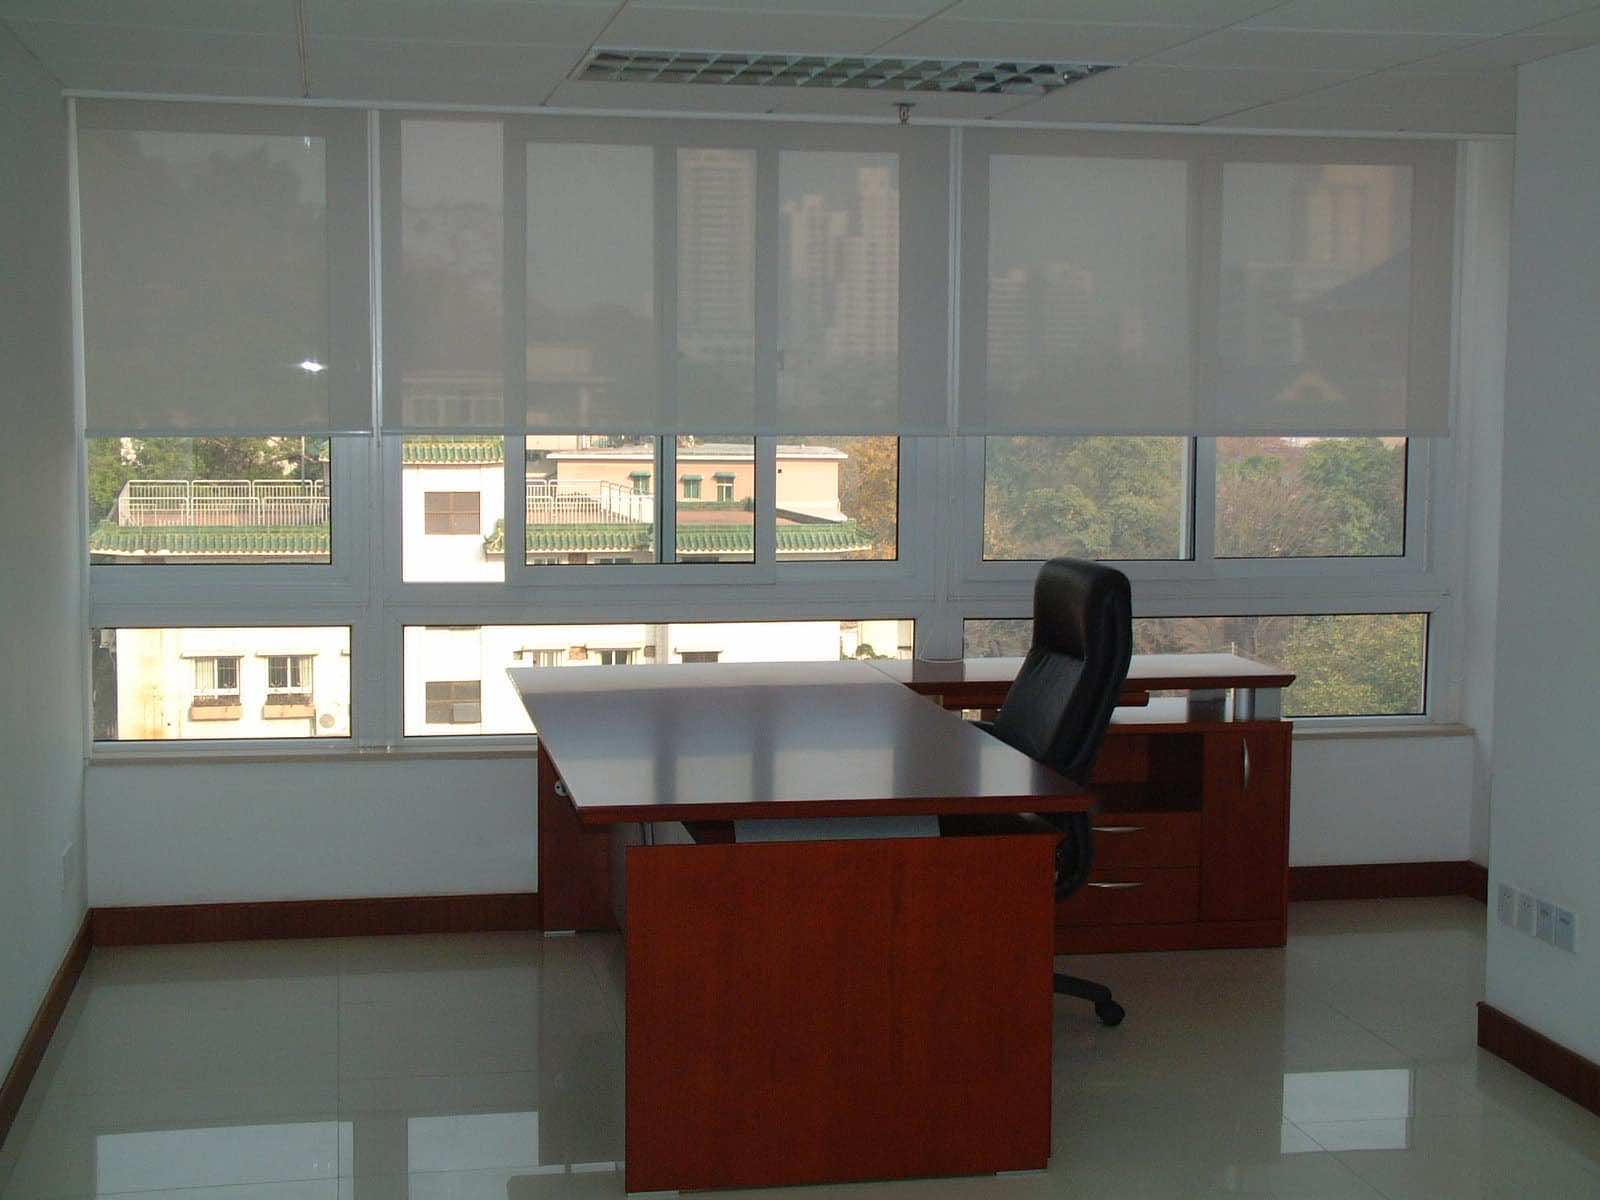 Chọn màn cửa văn phòng cho công ty phù hợp với nội thất